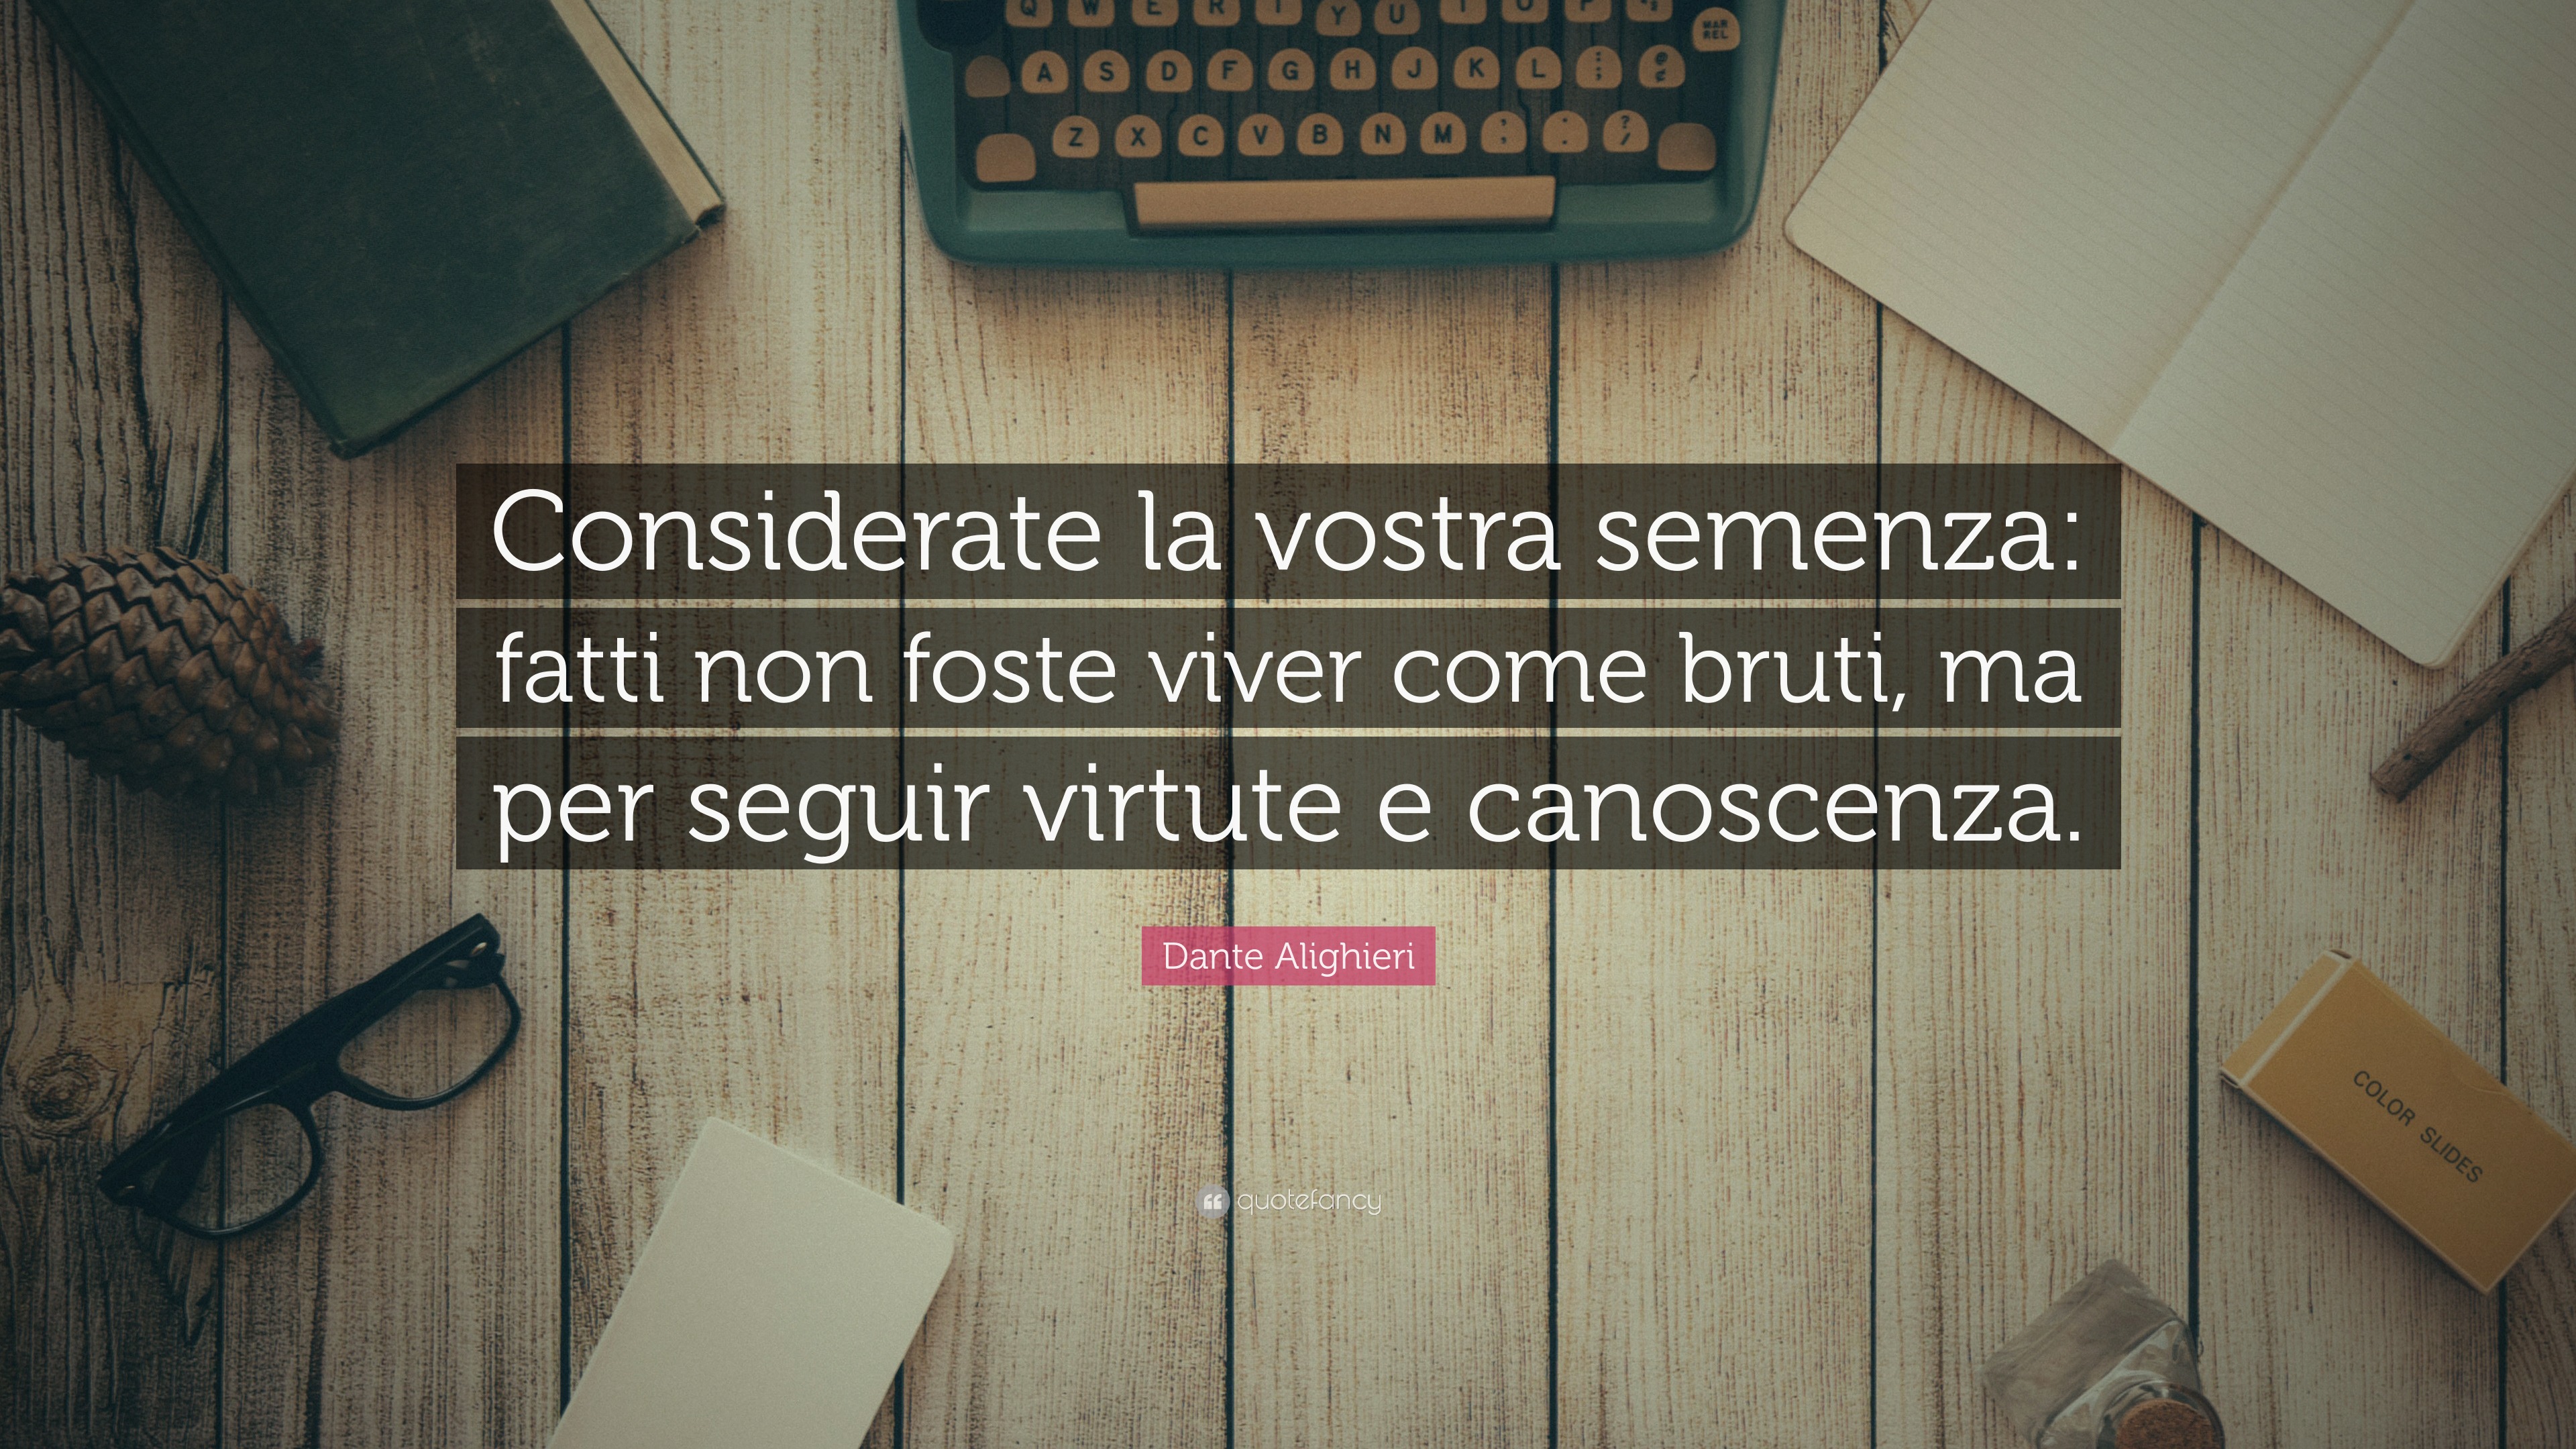 Dante Alighieri Quote: “Considerate la vostra semenza: fatti non foste ...